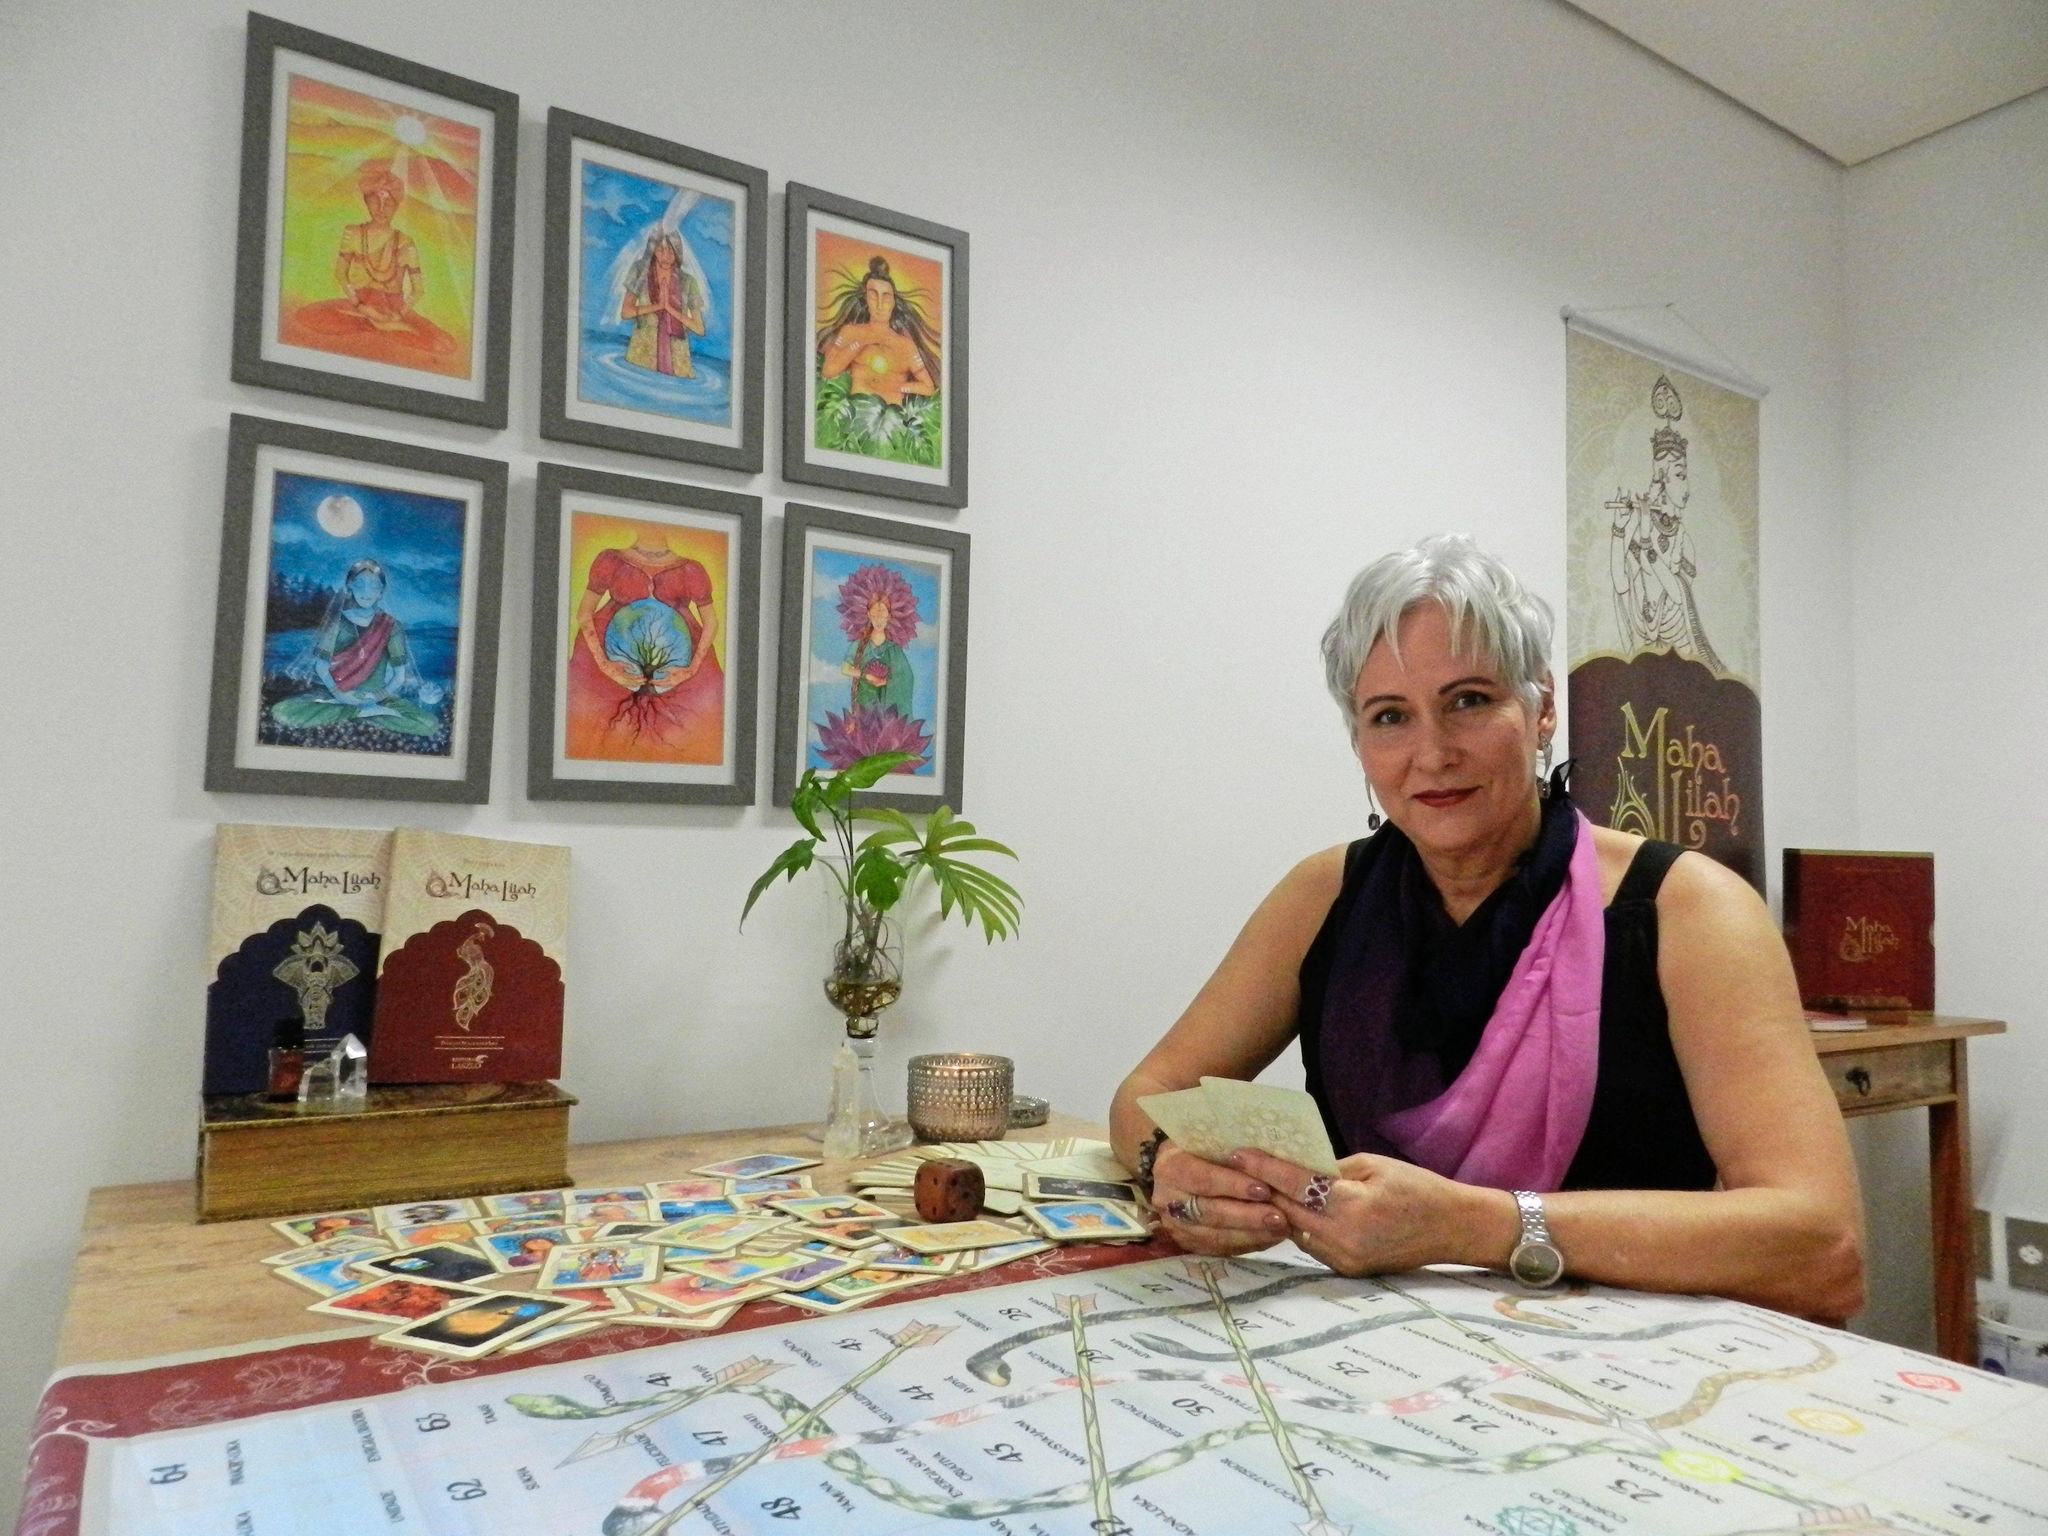 Denise Mascarenhas utiliza, há 25 anos, o jogo Maha Lilah, sabedoria milenar que acessa conteúdos do inconsciente